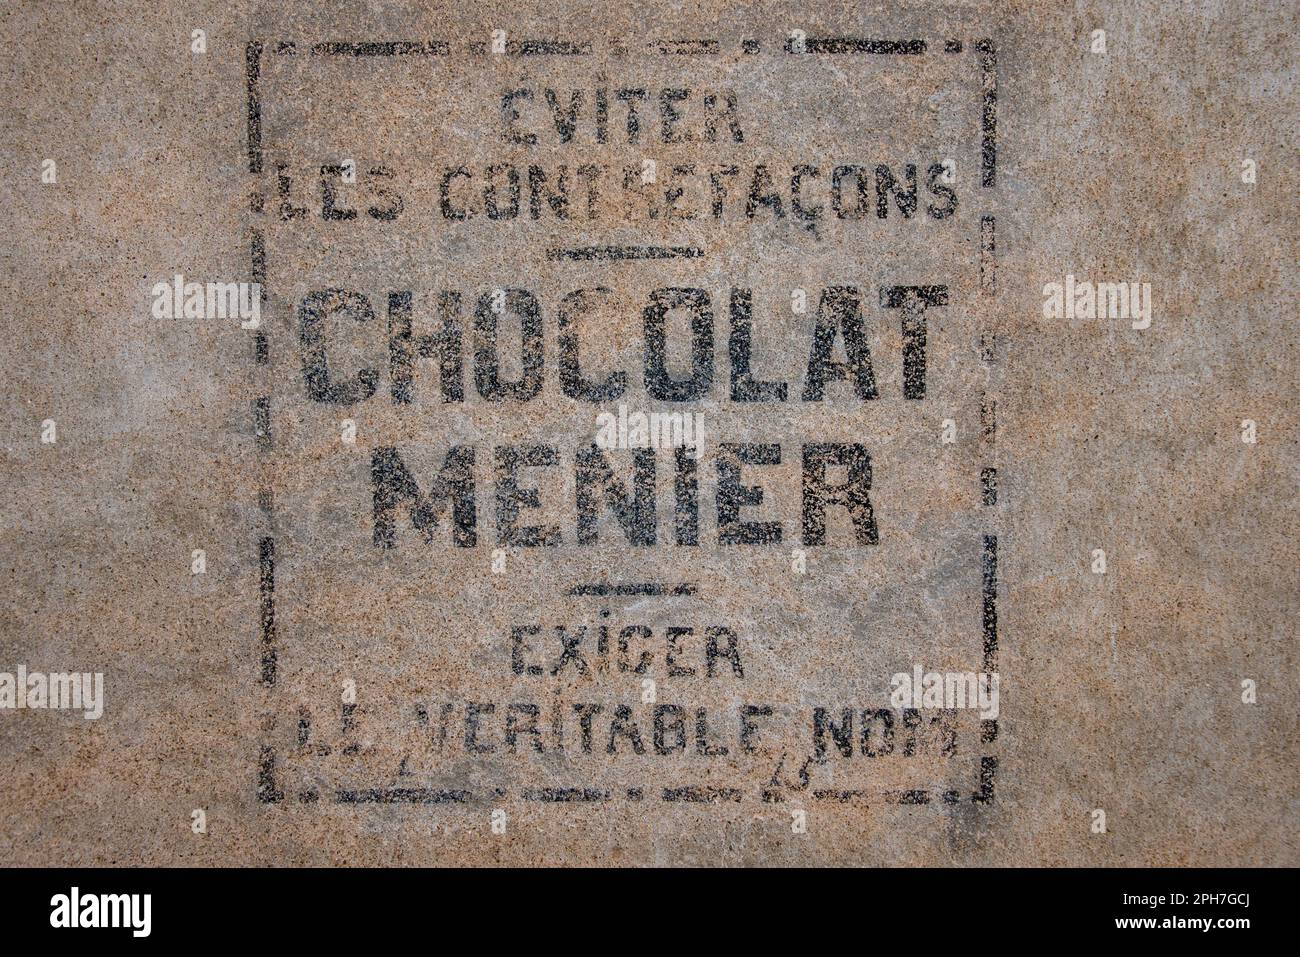 Chocolat Menier: Un segno sbiadito di una marca dimenticata di dolci su una facciata nel vecchio villaggio Roquebrun nella valle del fiume Orb del sud della Francia. Foto Stock